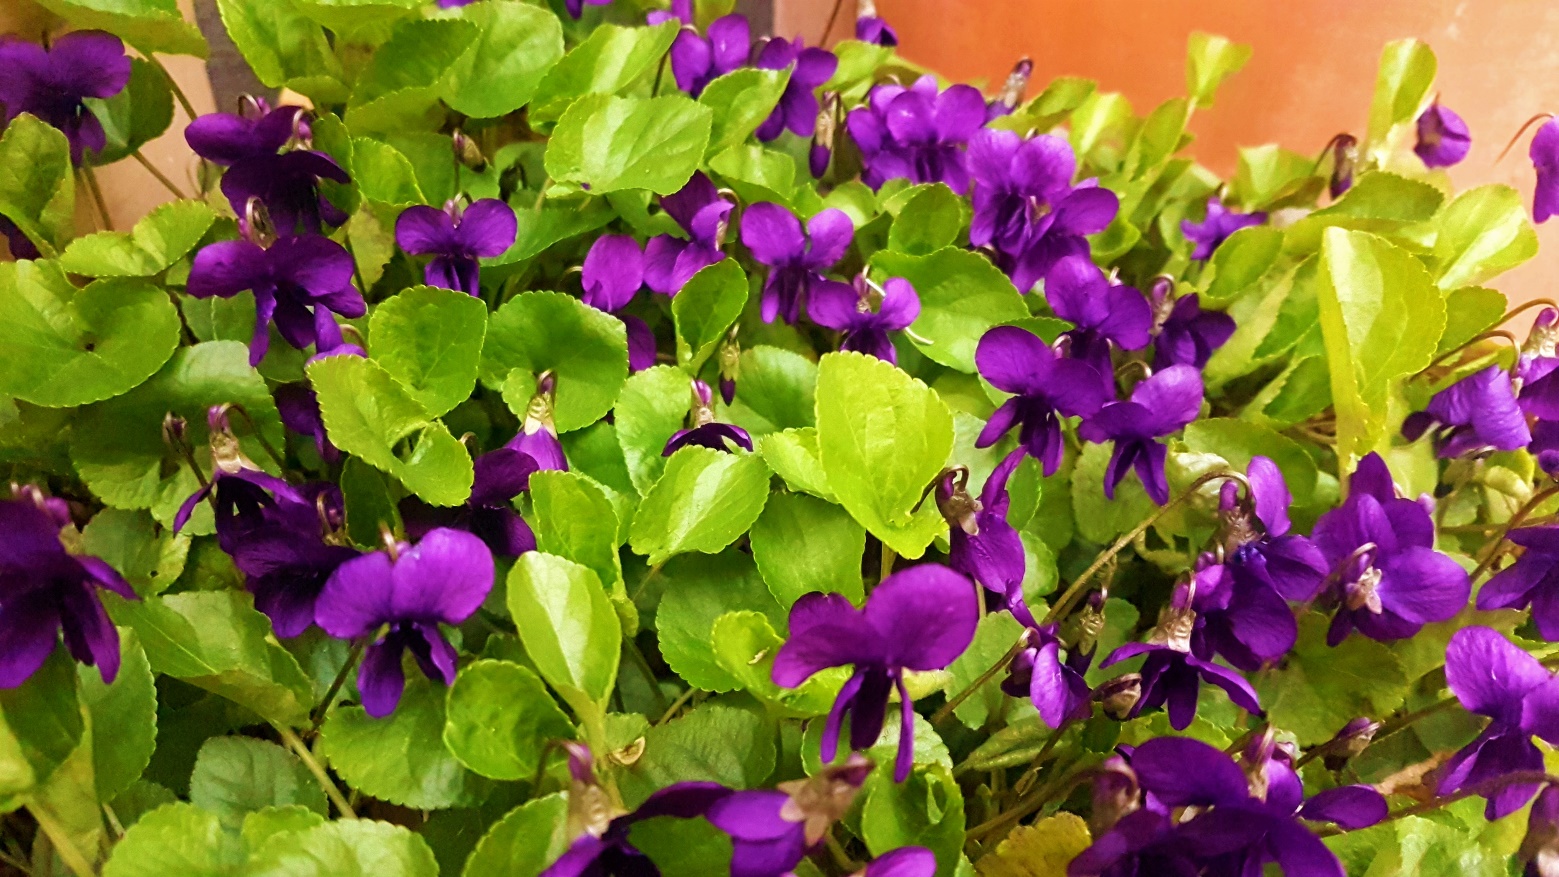 Slika, ki vsebuje besede roža, rastlina, purpurna, zapri

Opis je samodejno ustvarjen